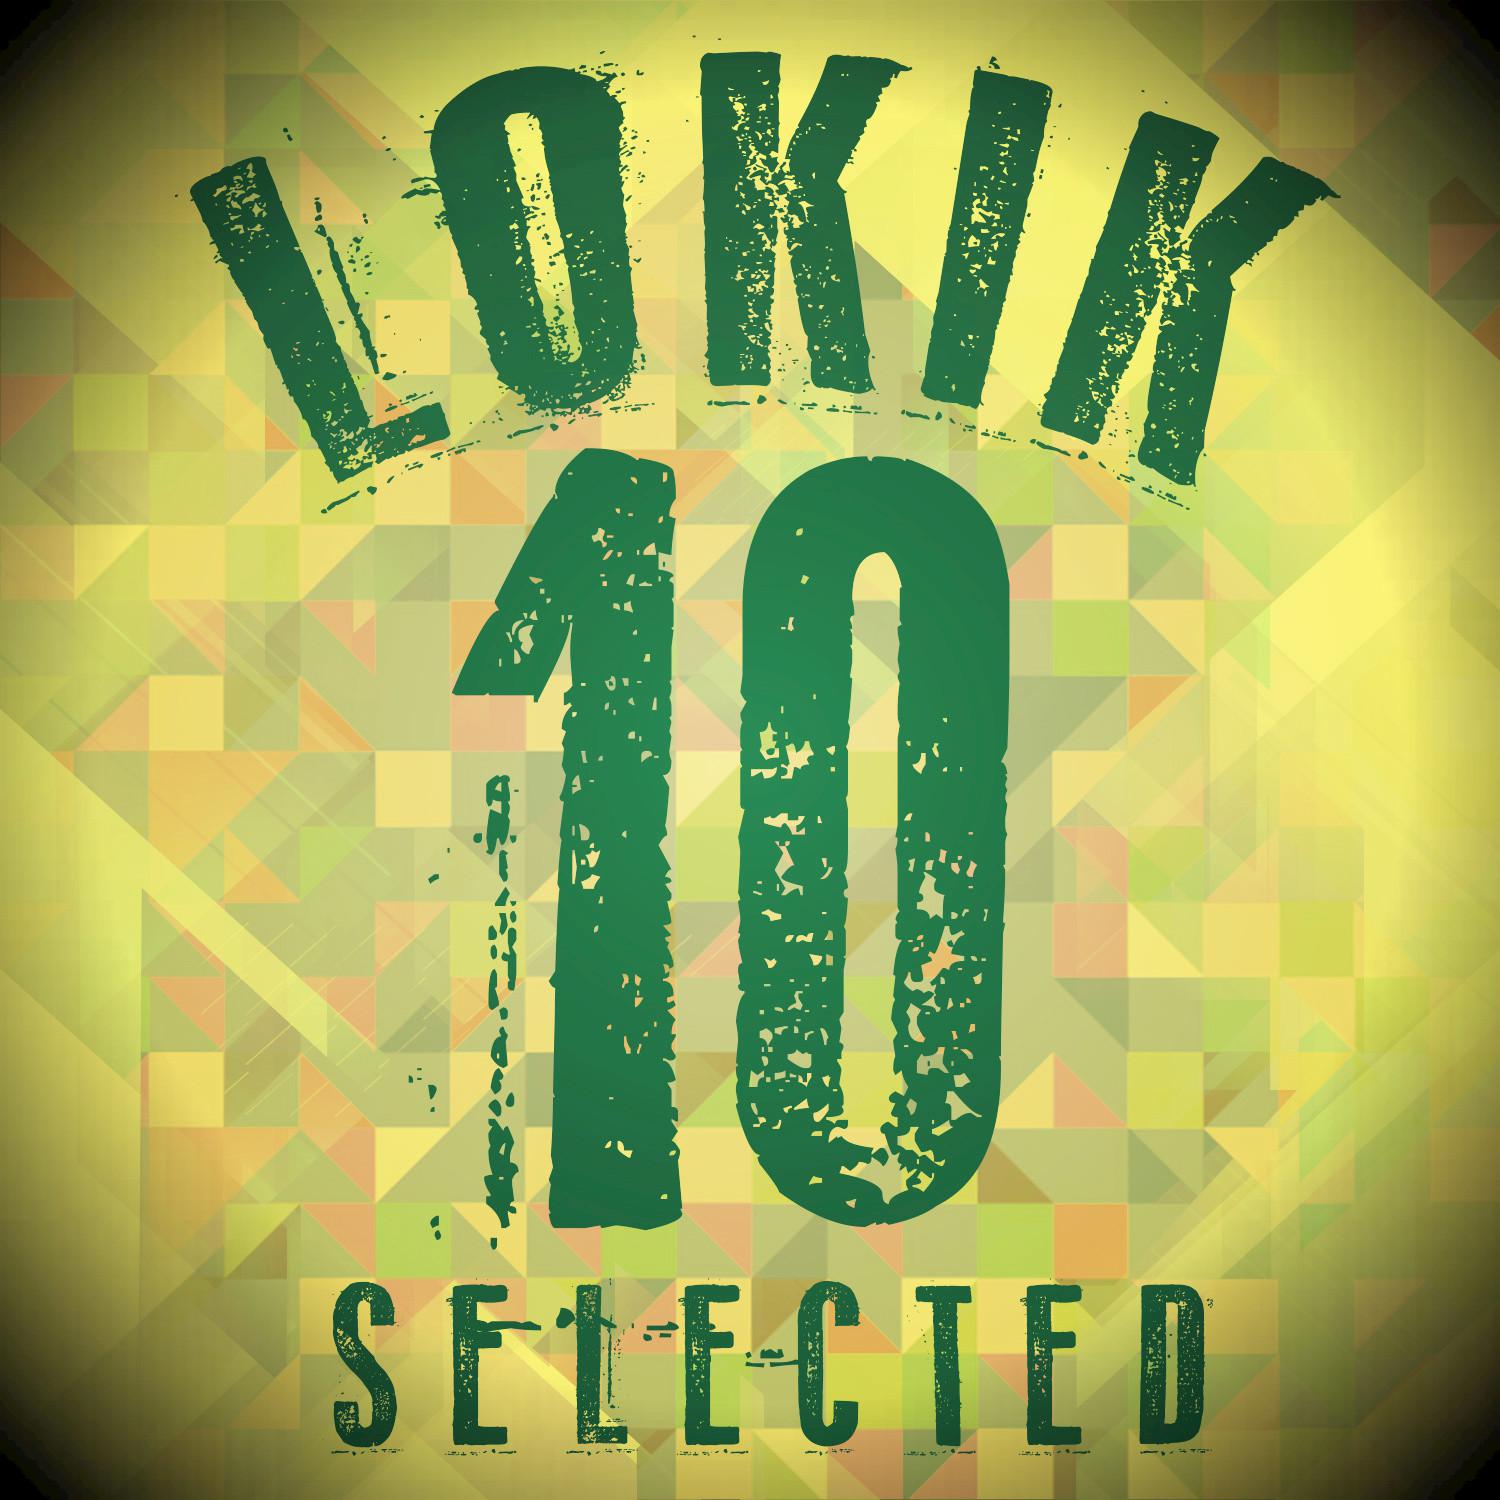 Lo Kik Selected, Vol.10